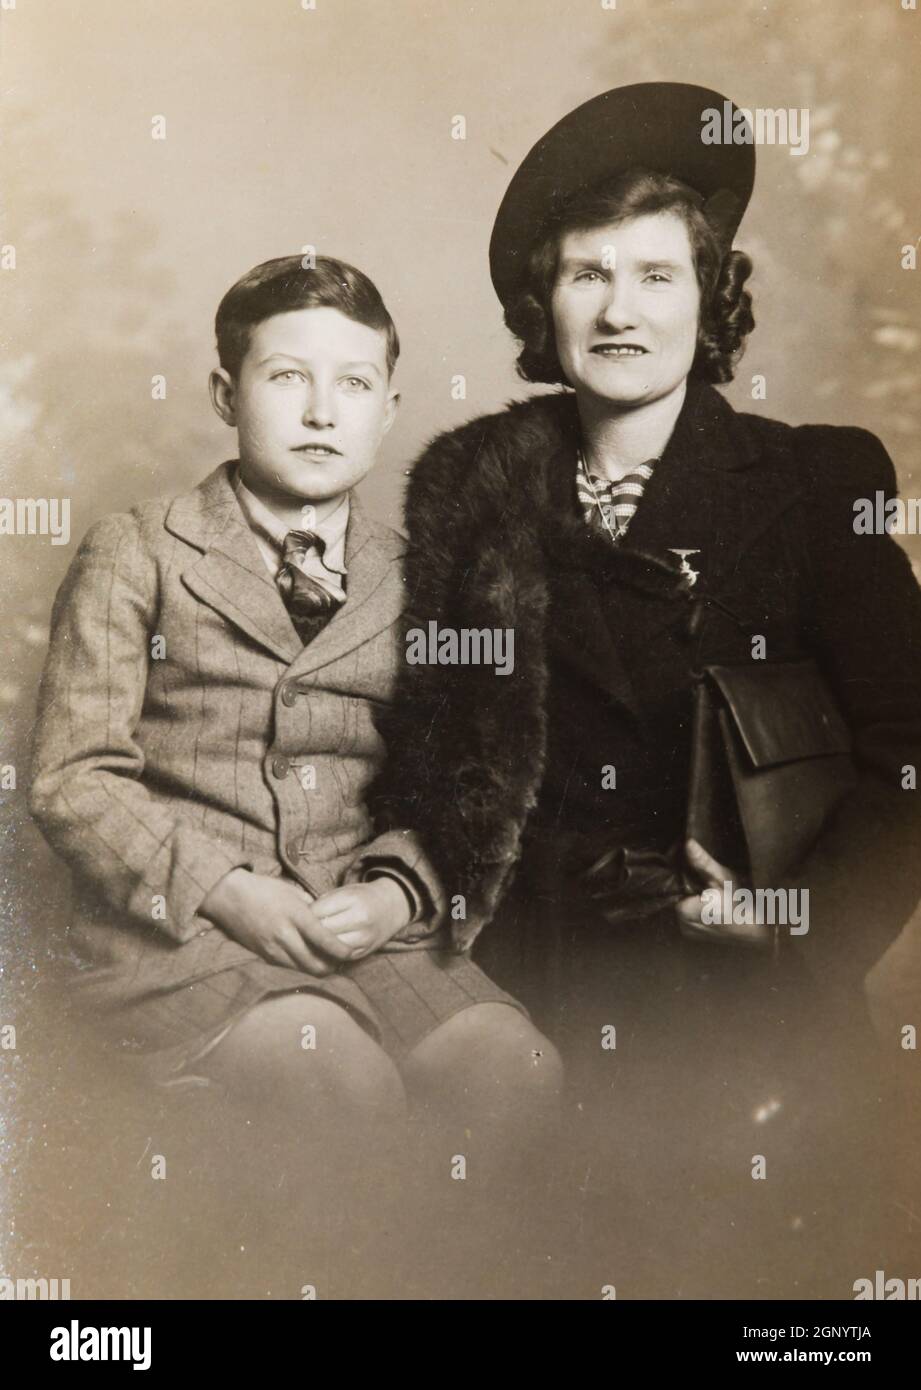 Mutter und Sohn sitzen während des 2. Weltkrieges für ein Porträt. 1941. Archiv. Alte Sepia-Fotografie. Stockfoto